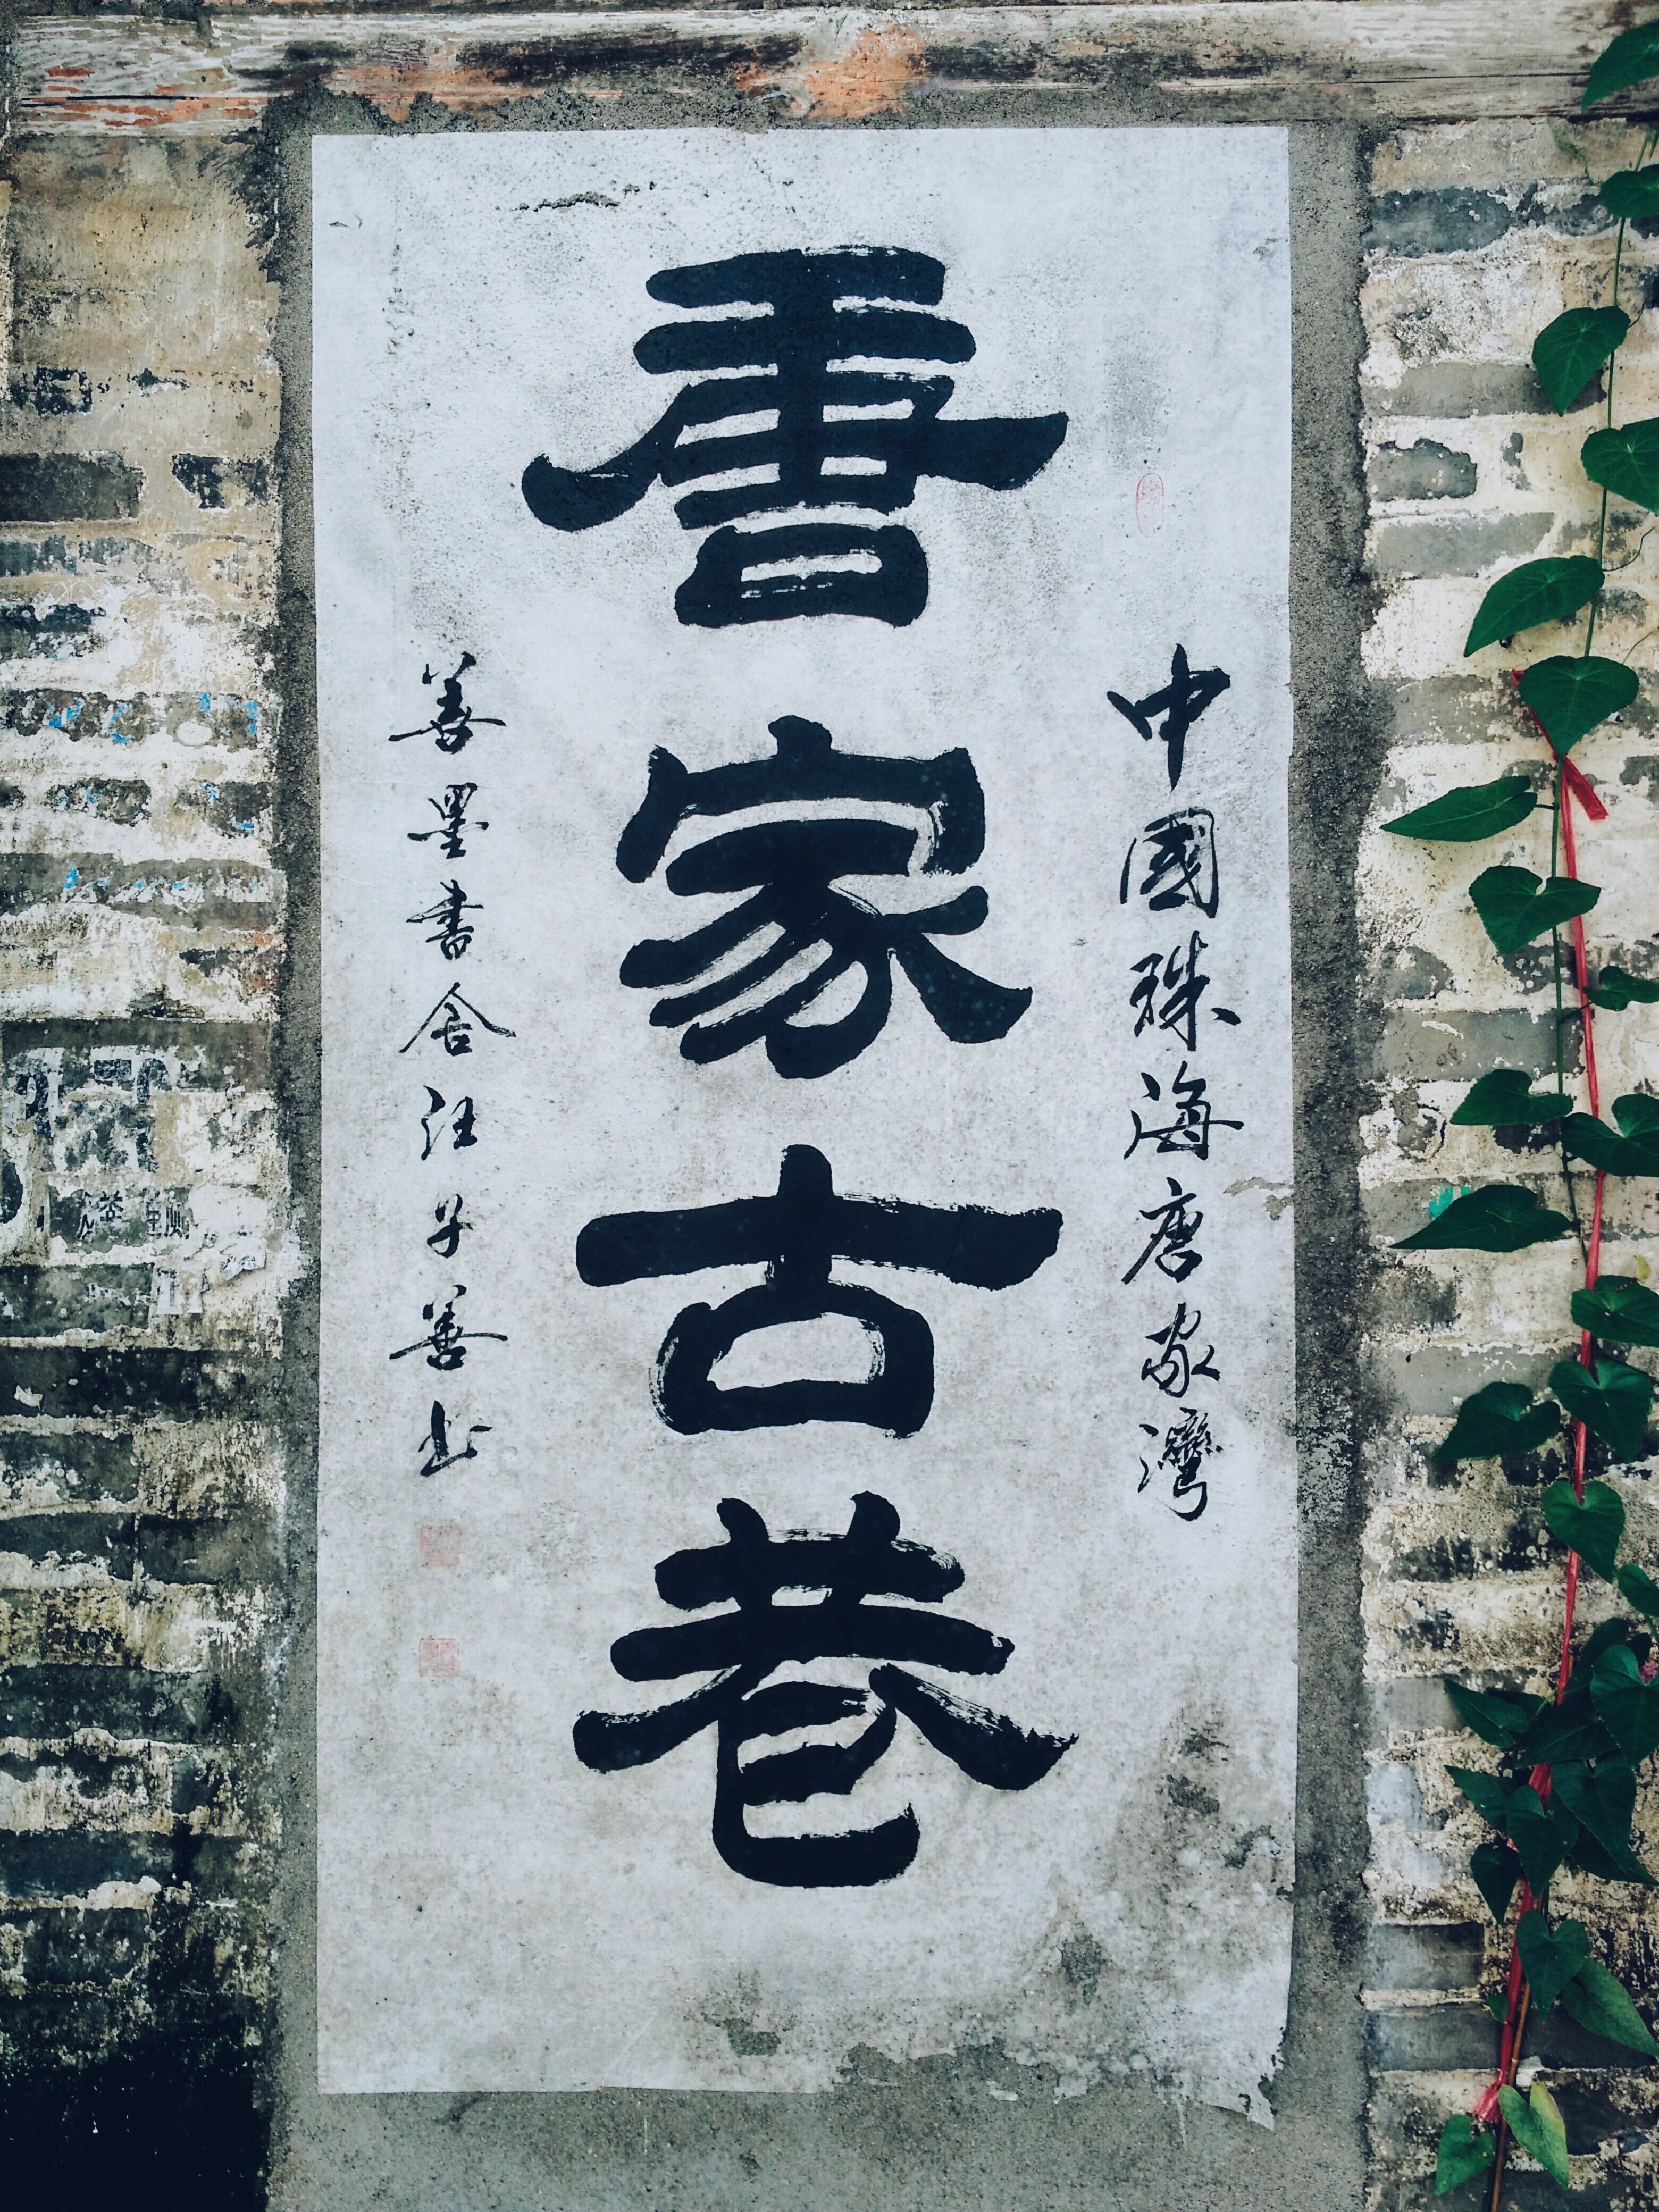 kanji text